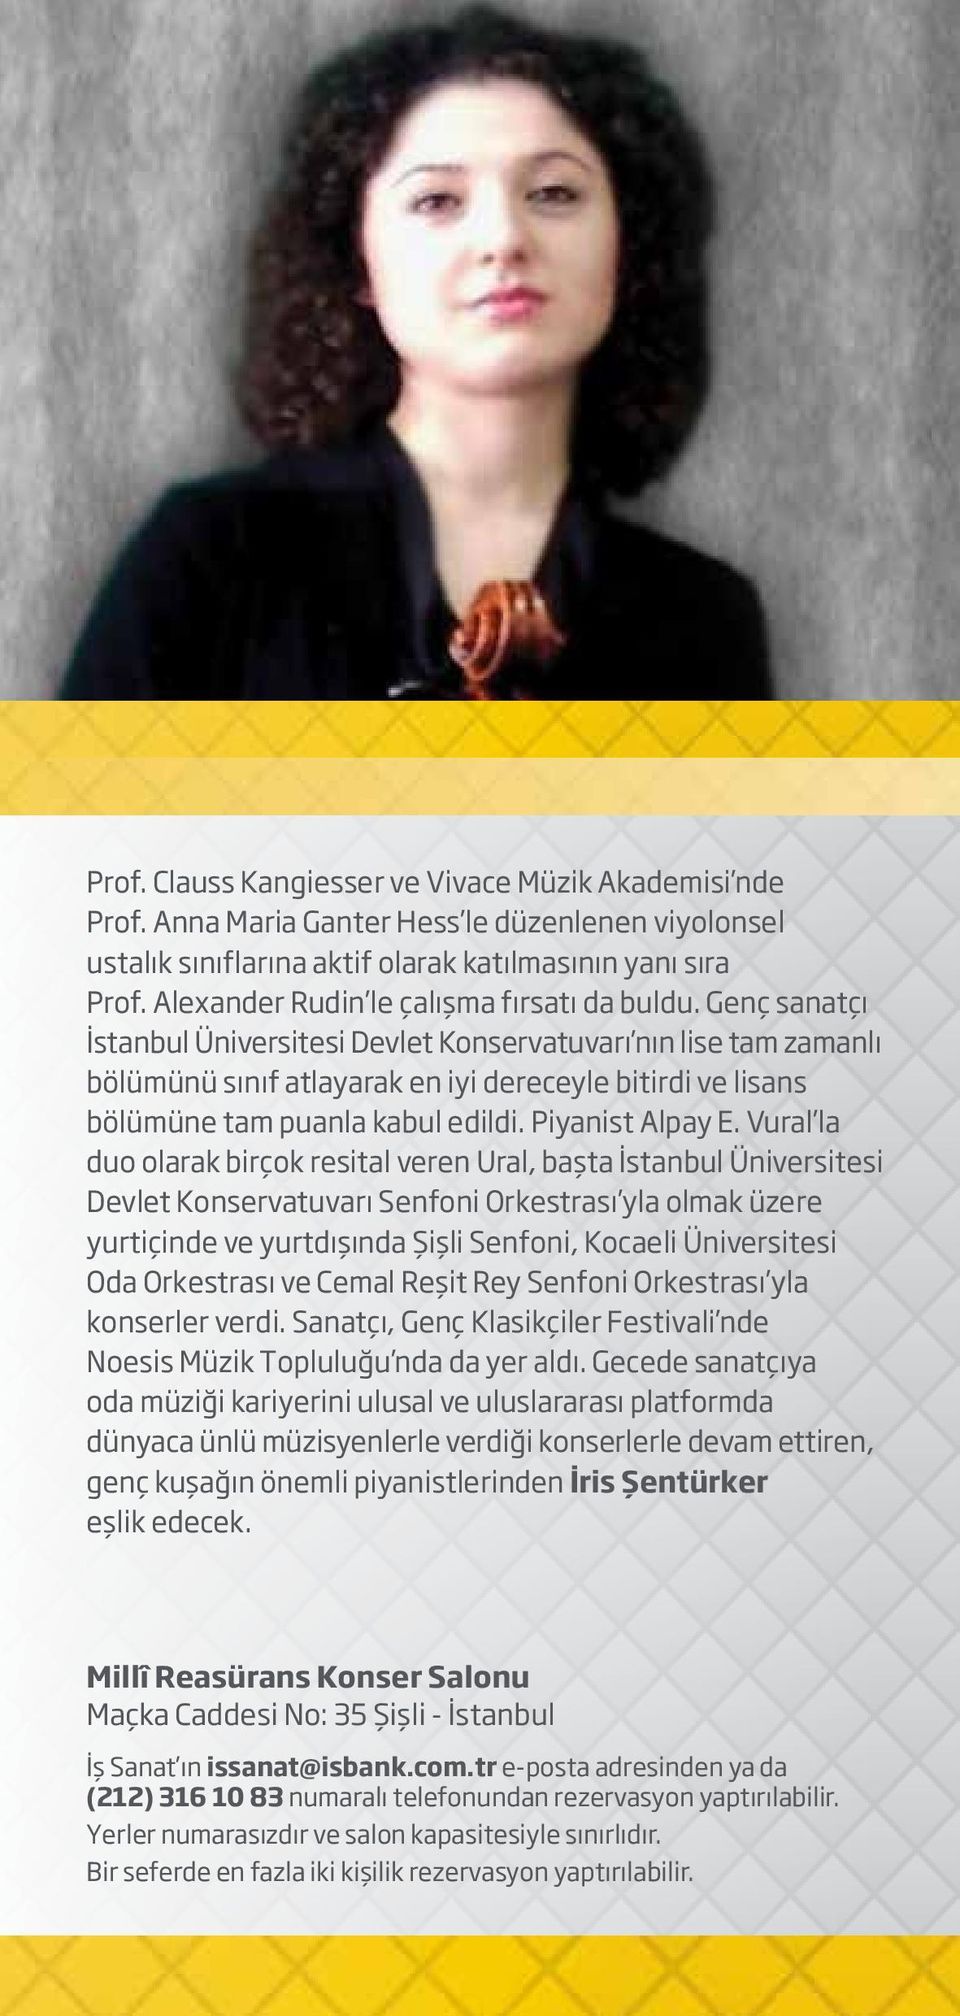 Genç sanatçı İstanbul Üniversitesi Devlet Konservatuvarı nın lise tam zamanlı bölümünü sınıf atlayarak en iyi dereceyle bitirdi ve lisans bölümüne tam puanla kabul edildi. Piyanist Alpay E.